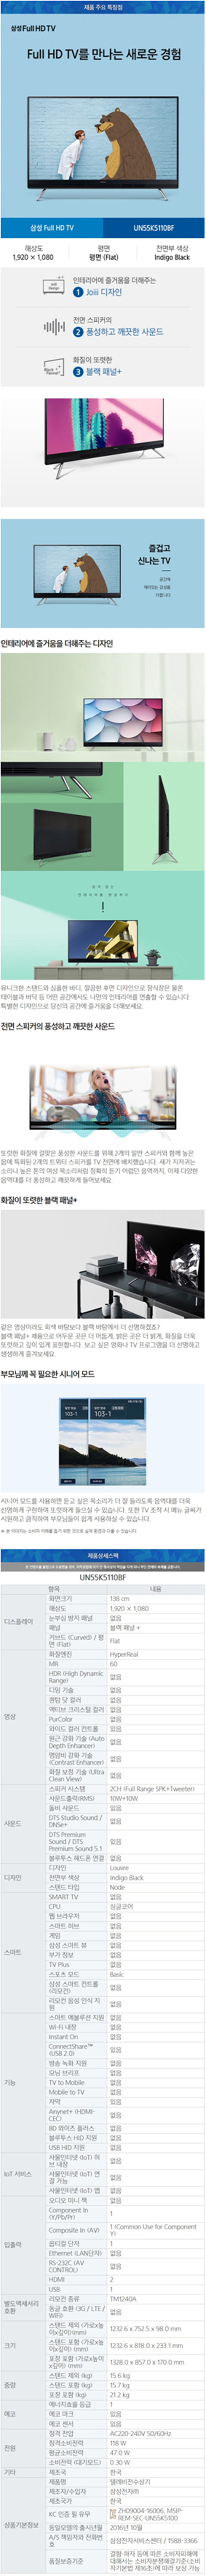 중앙케이블 - 삼성 55인치 LED TV (UN55K5110BF) 상세보기